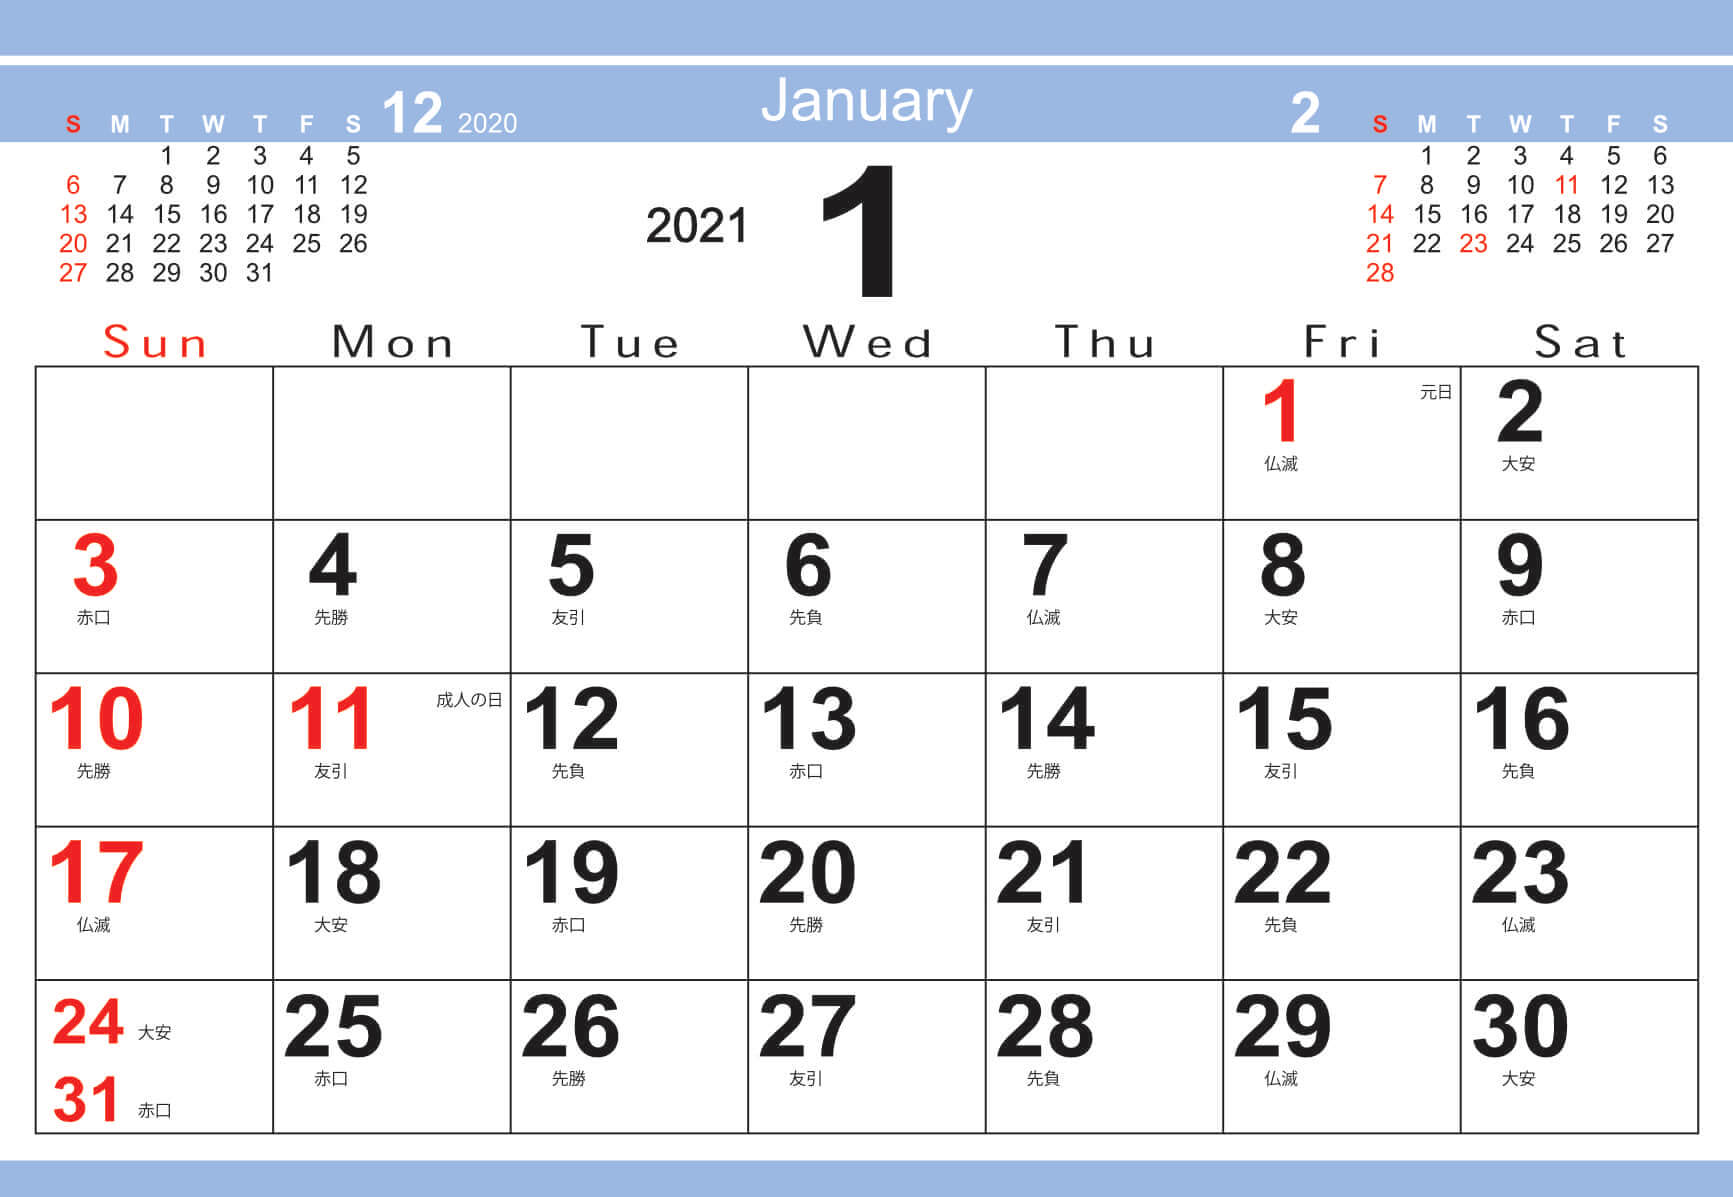  シンプルデザインデスク 2021年カレンダーの画像